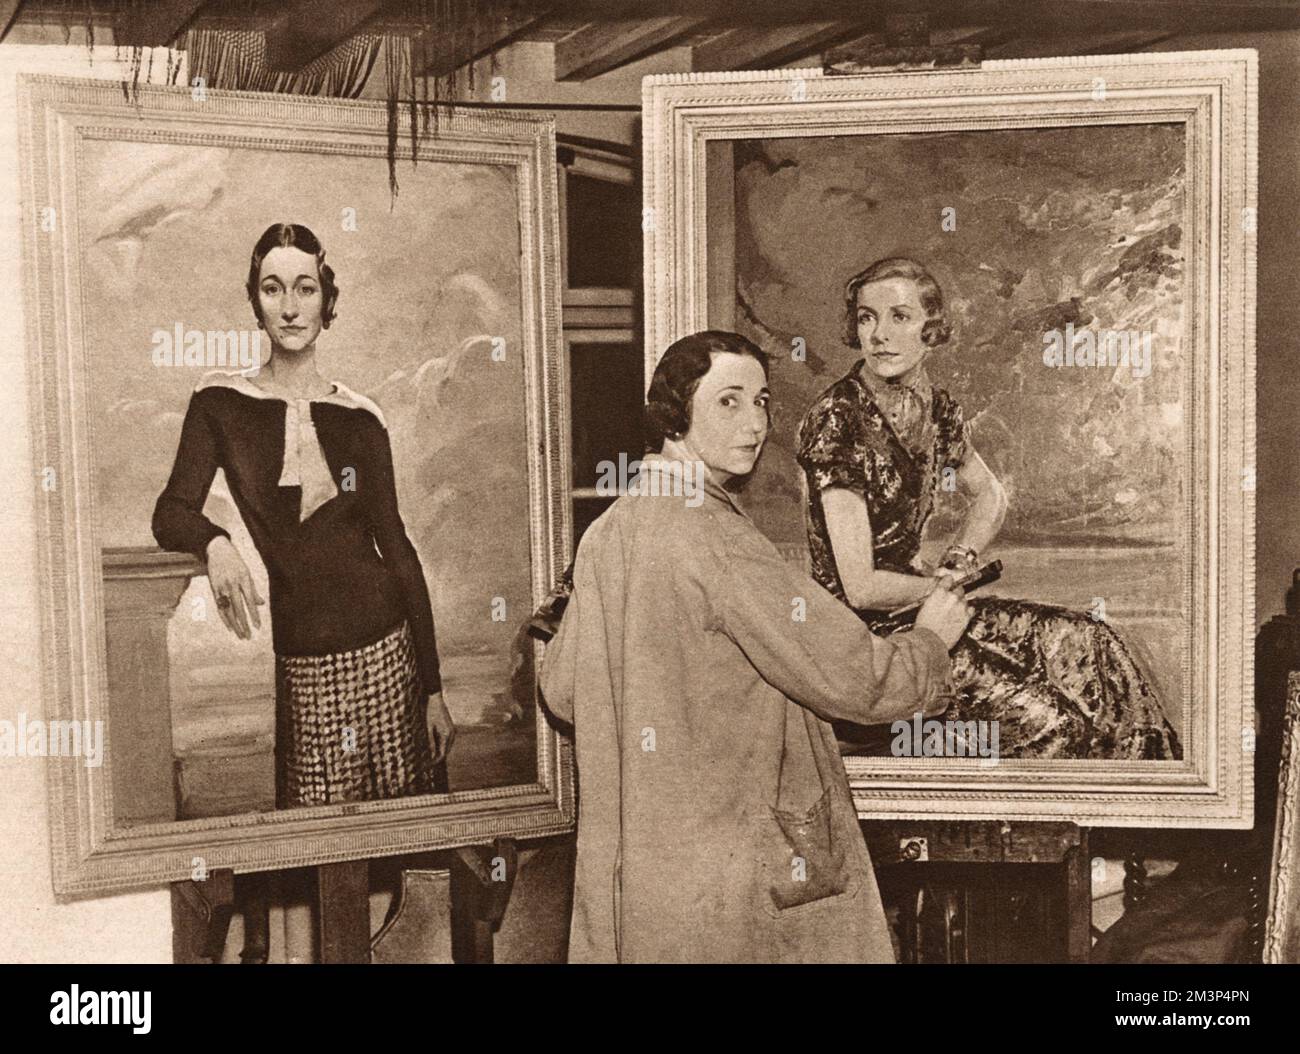 Mrs. R. C. Anderson, amerikanische Künstlerin, die unter dem Namen M. Baynon Copeland malte, in ihrem Studio bei der Arbeit an einem Porträt von Lady Louis Mountbatten. Ein Porträt von Mrs. Wallis Simpson, später Herzogin von Windsor, ist links zu sehen. Die Herzogin war eine Freundin des Künstlers. Datum: 1937 Stockfoto